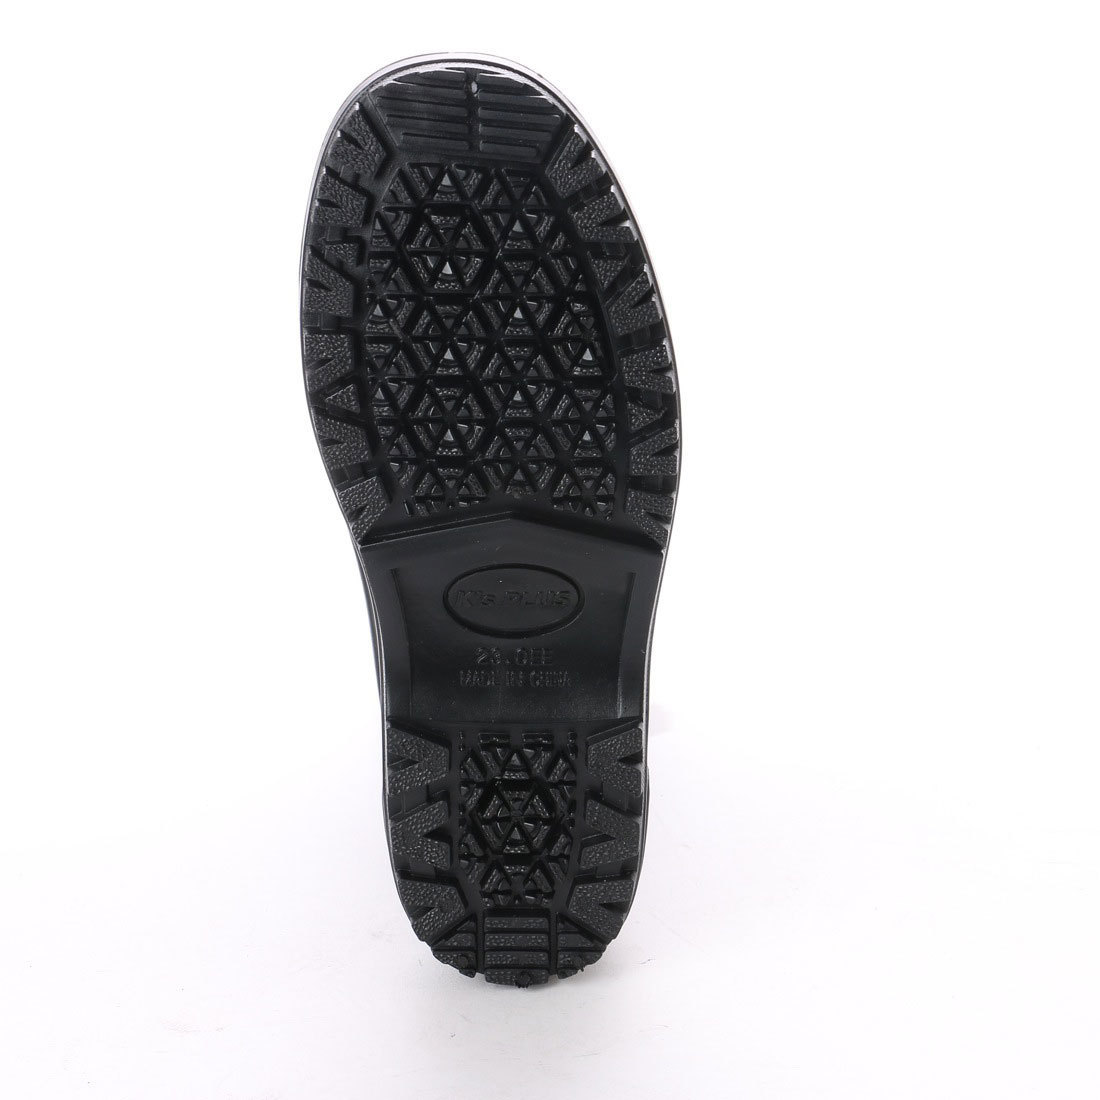  Kids влагостойкая обувь резиновые сапоги сапоги дождь обувь новый товар [17008-BLK-200]20.0cm жокей ботинки 